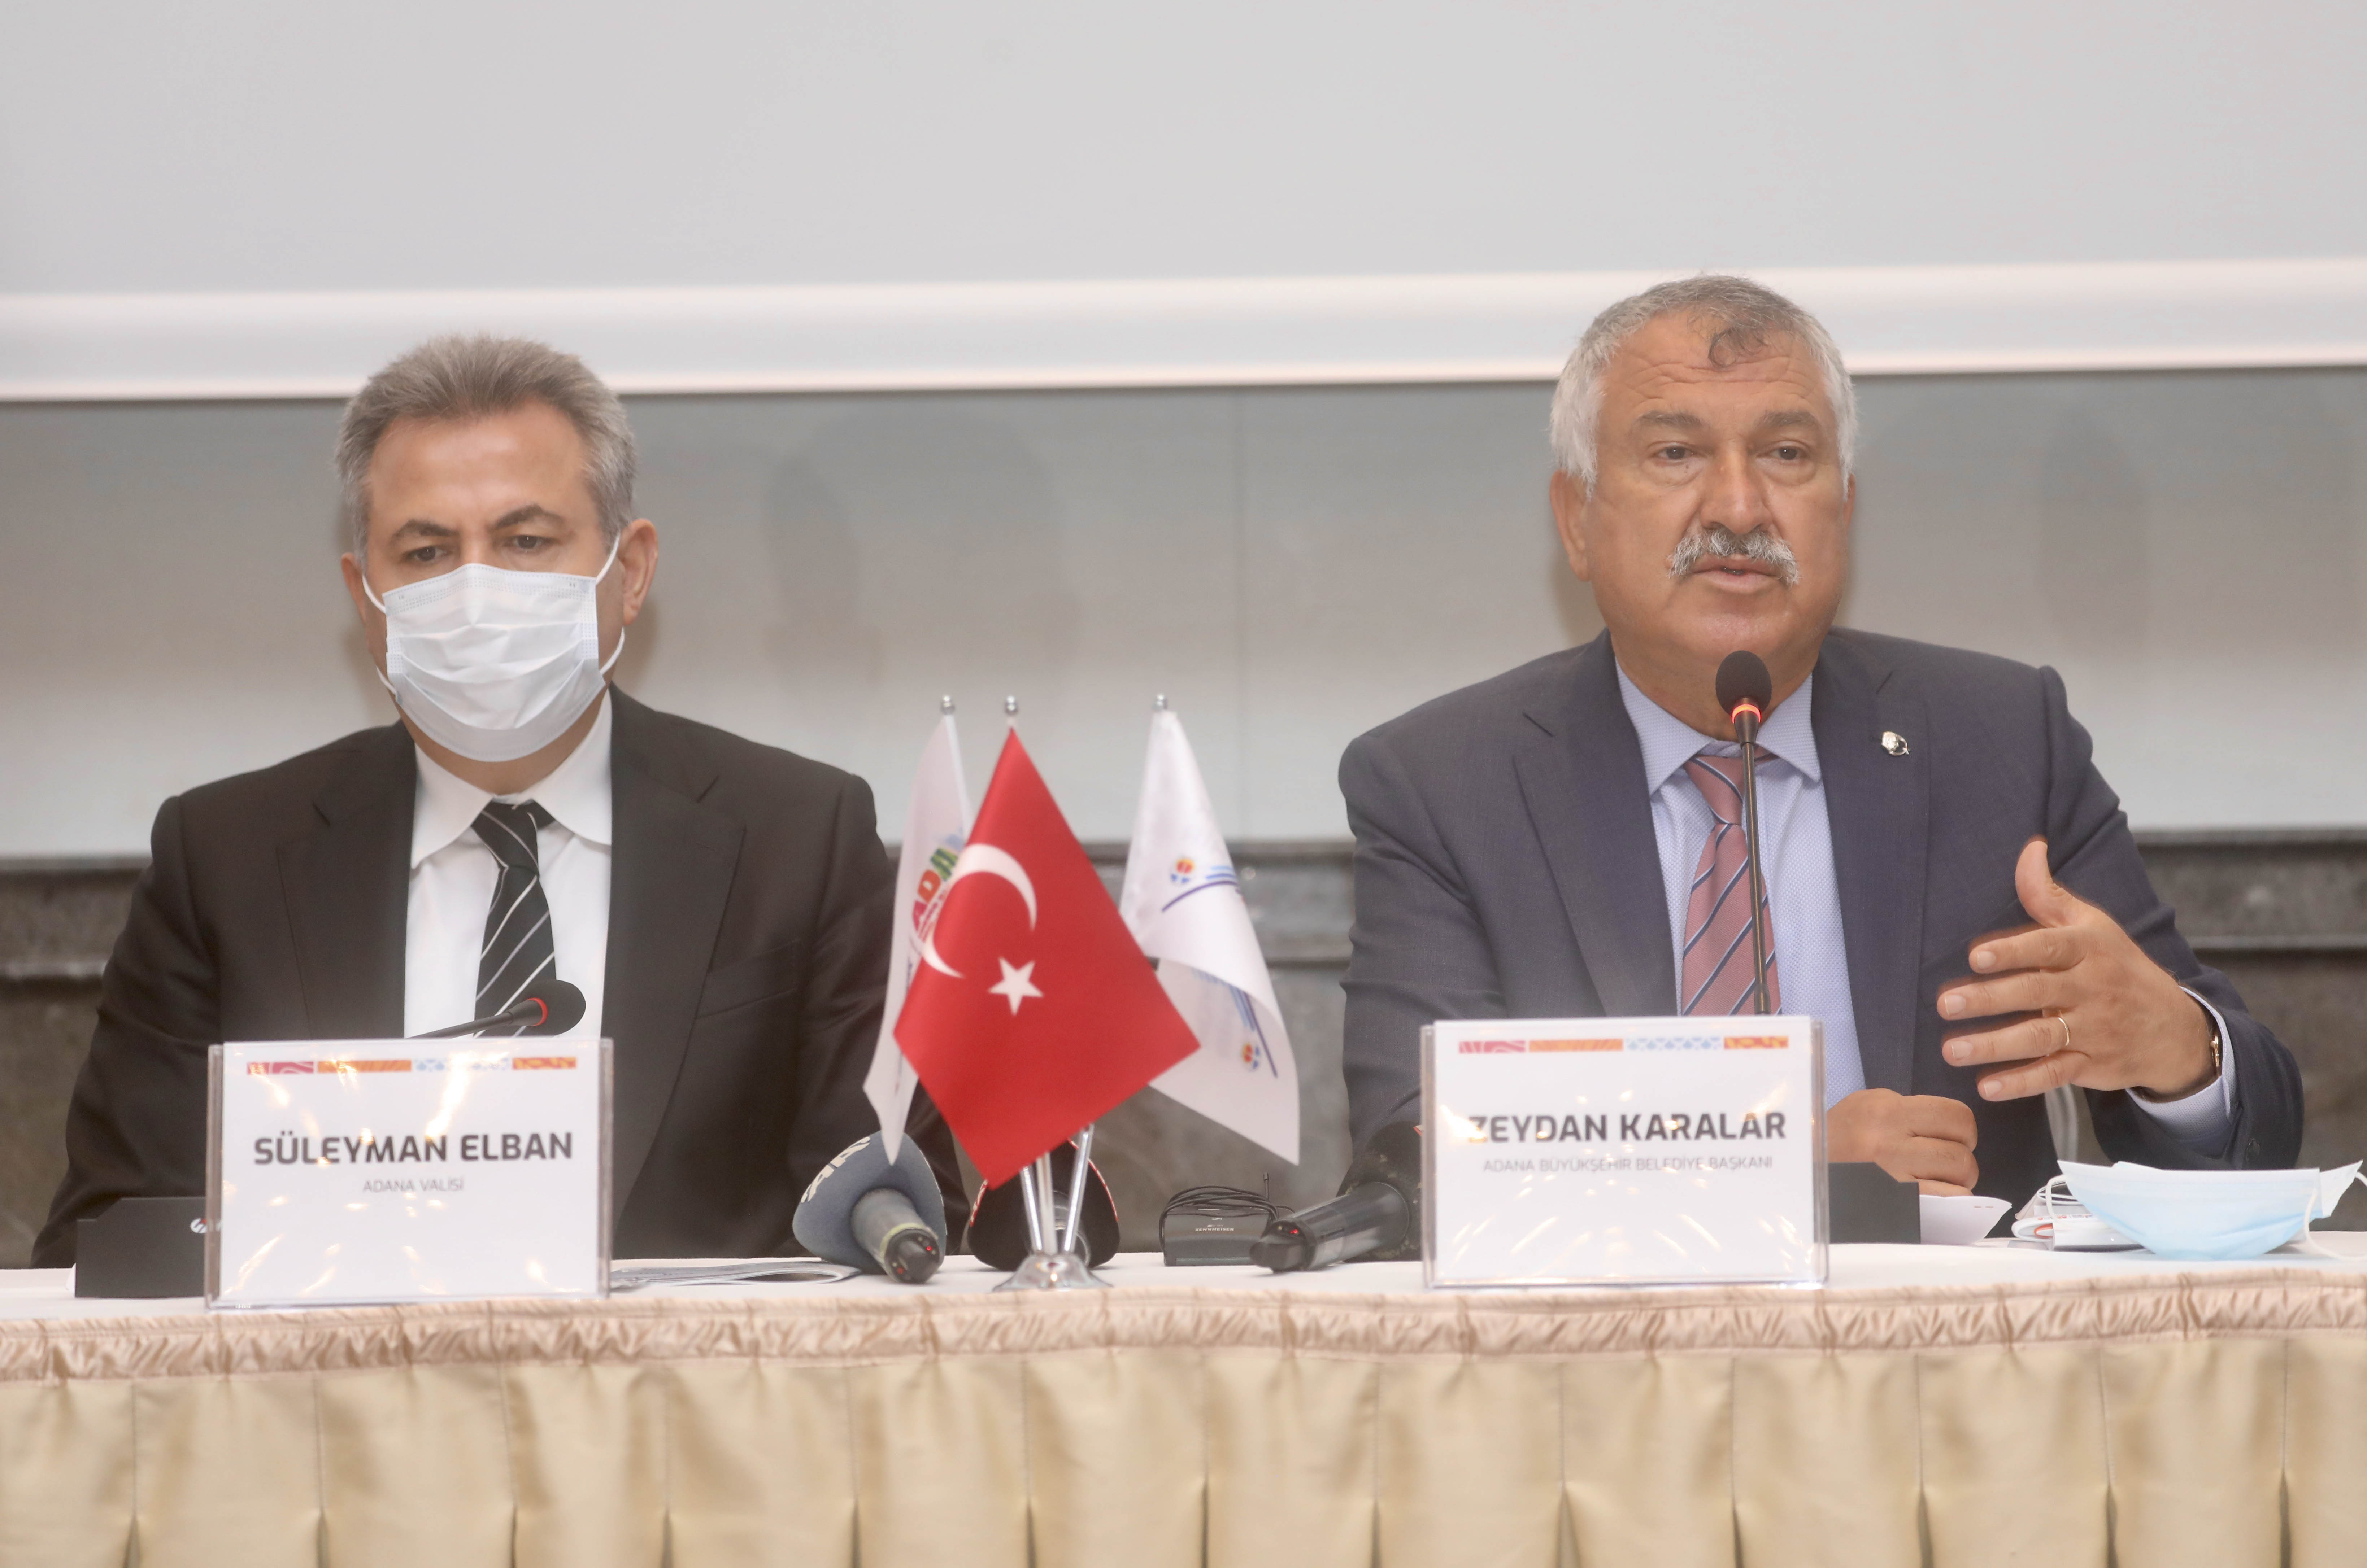 Adana’ya UNESCO tarafından Gastronomi Şehri unvanının verilmesi için başlatılan çalışmalar kapsamında, Komite Toplantısı gerçekleştirildi.